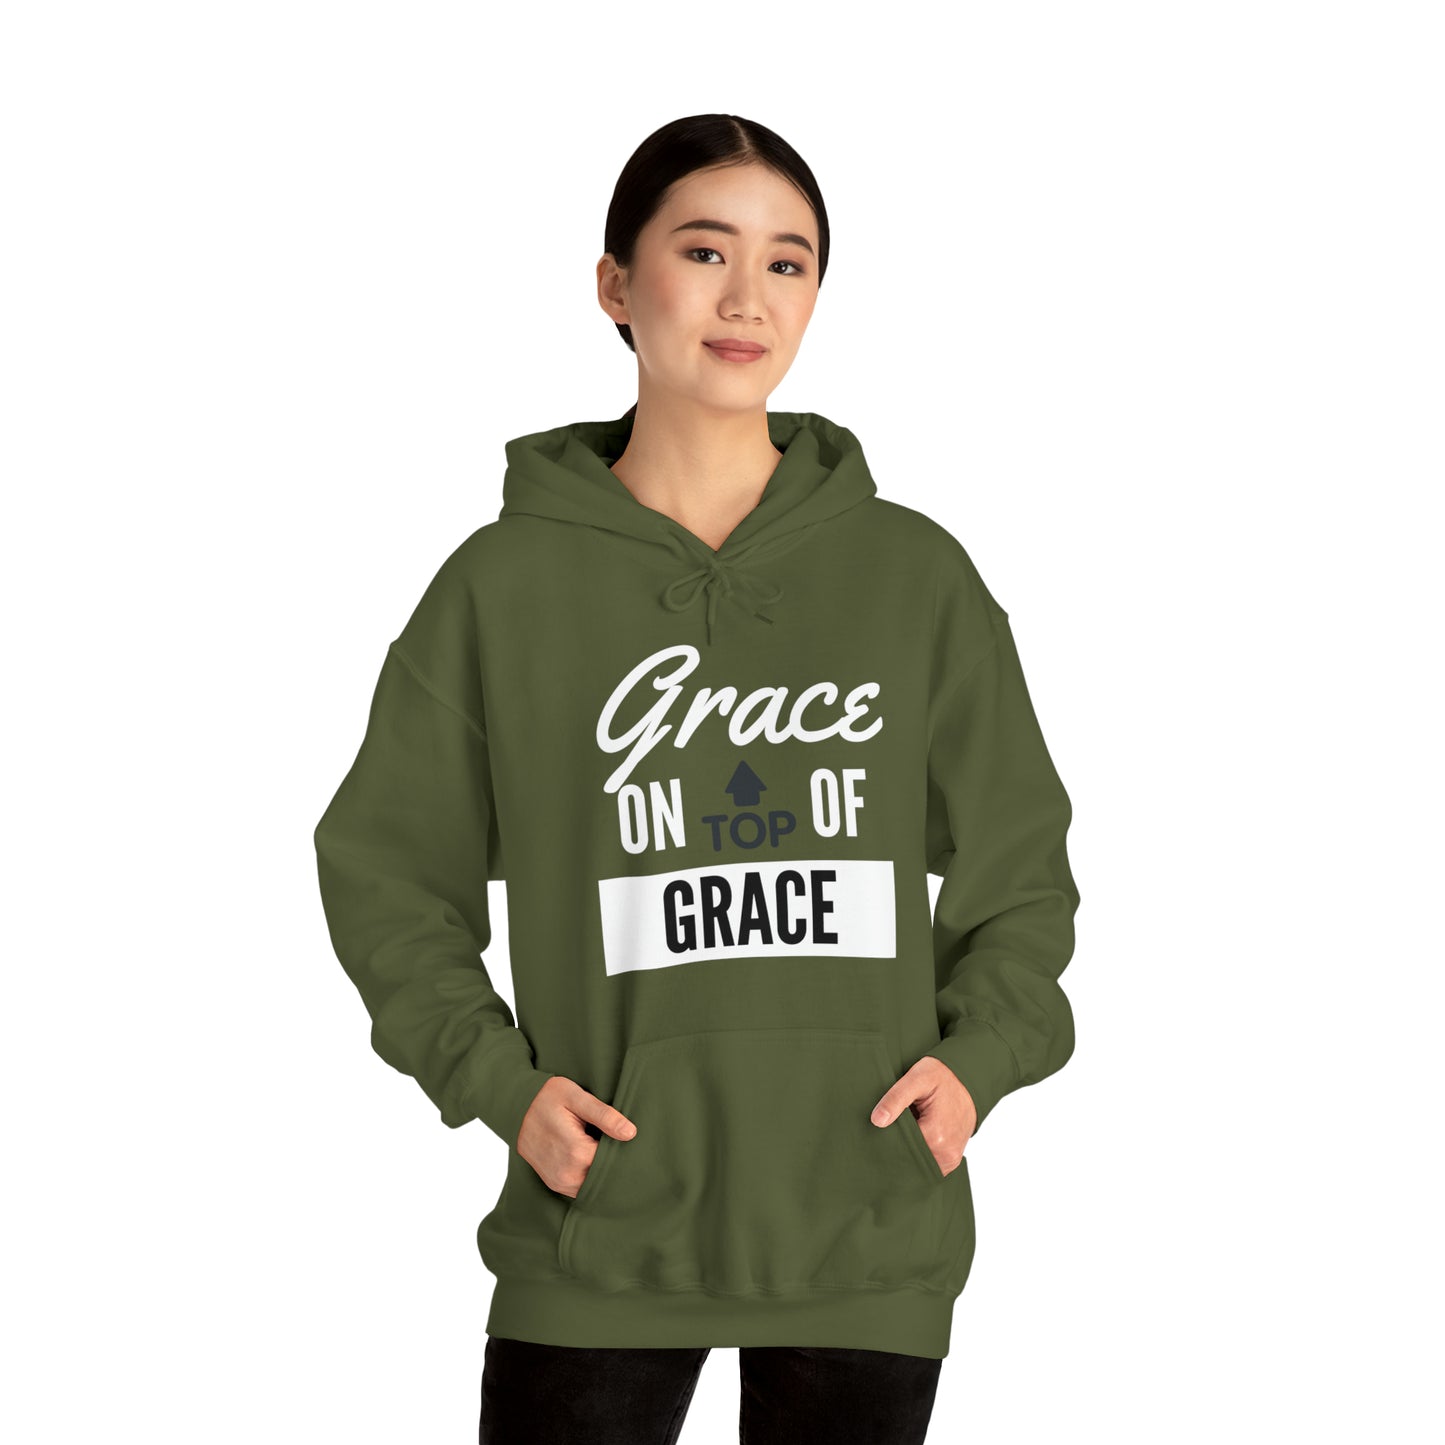 GRACE ON TOP GRACE Unisex Heavy Blend™ Hooded Sweatshirt